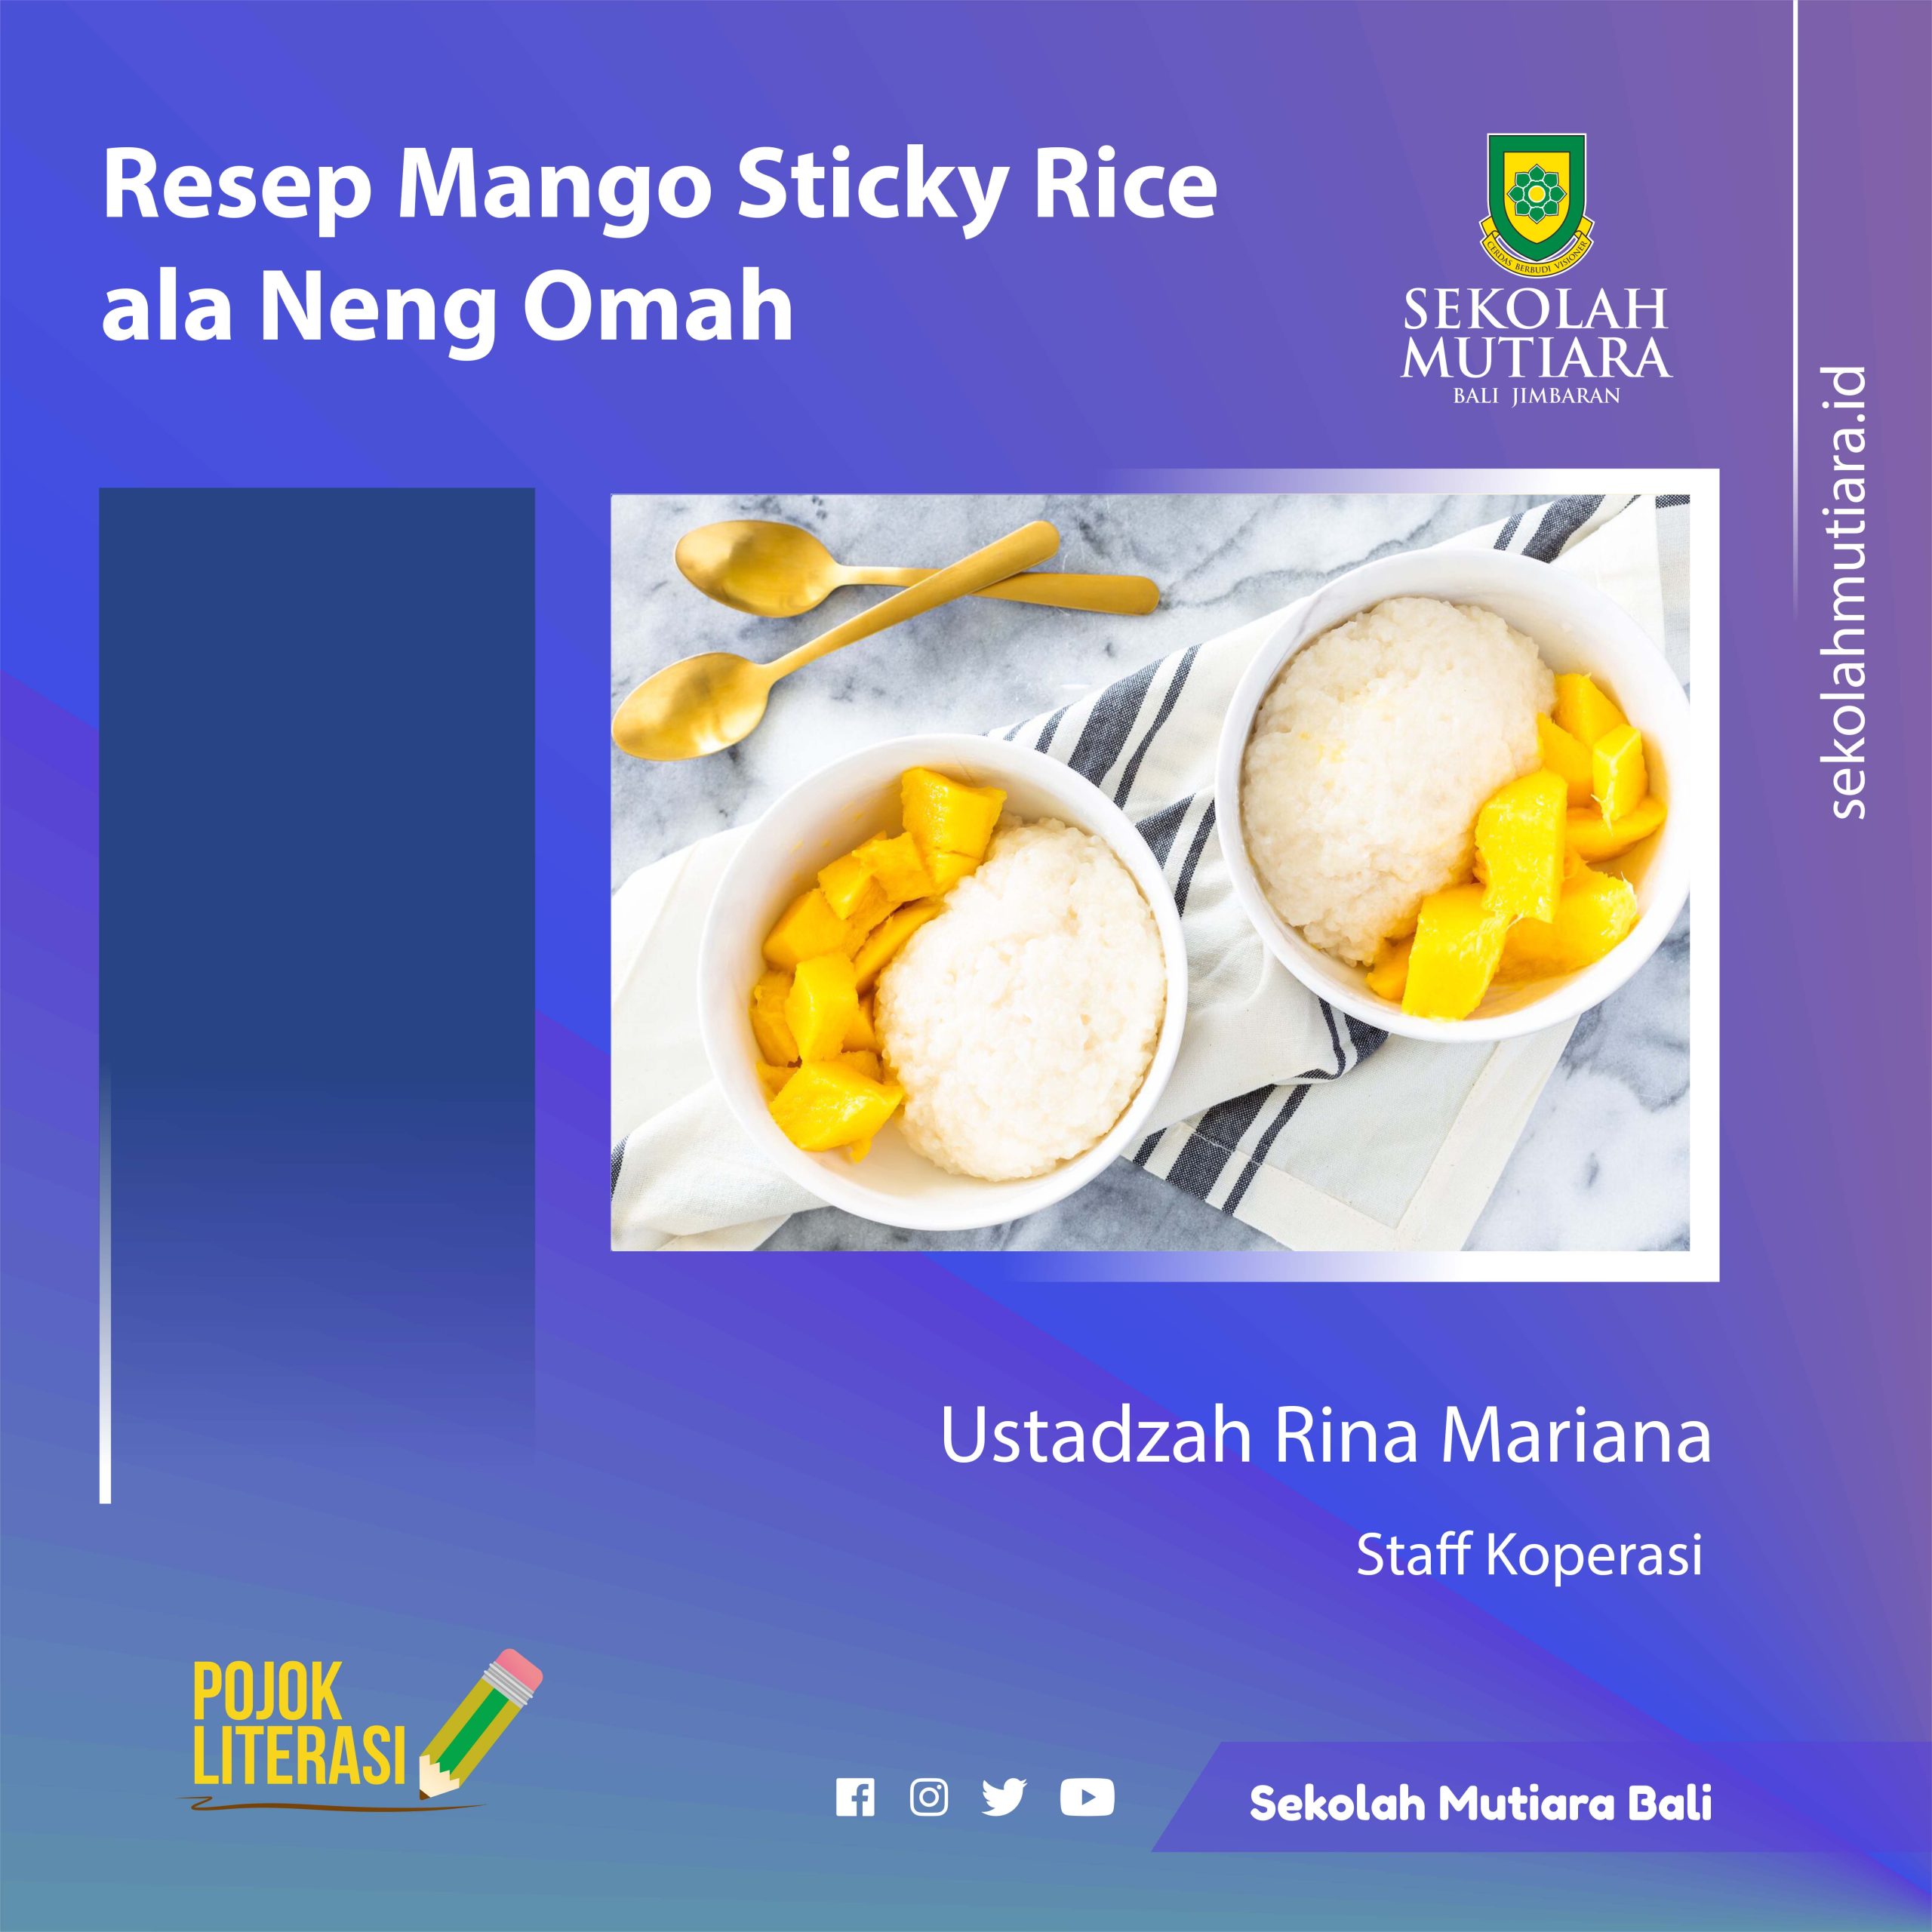 Resep Mango Sticky Rice ala Neng Omah